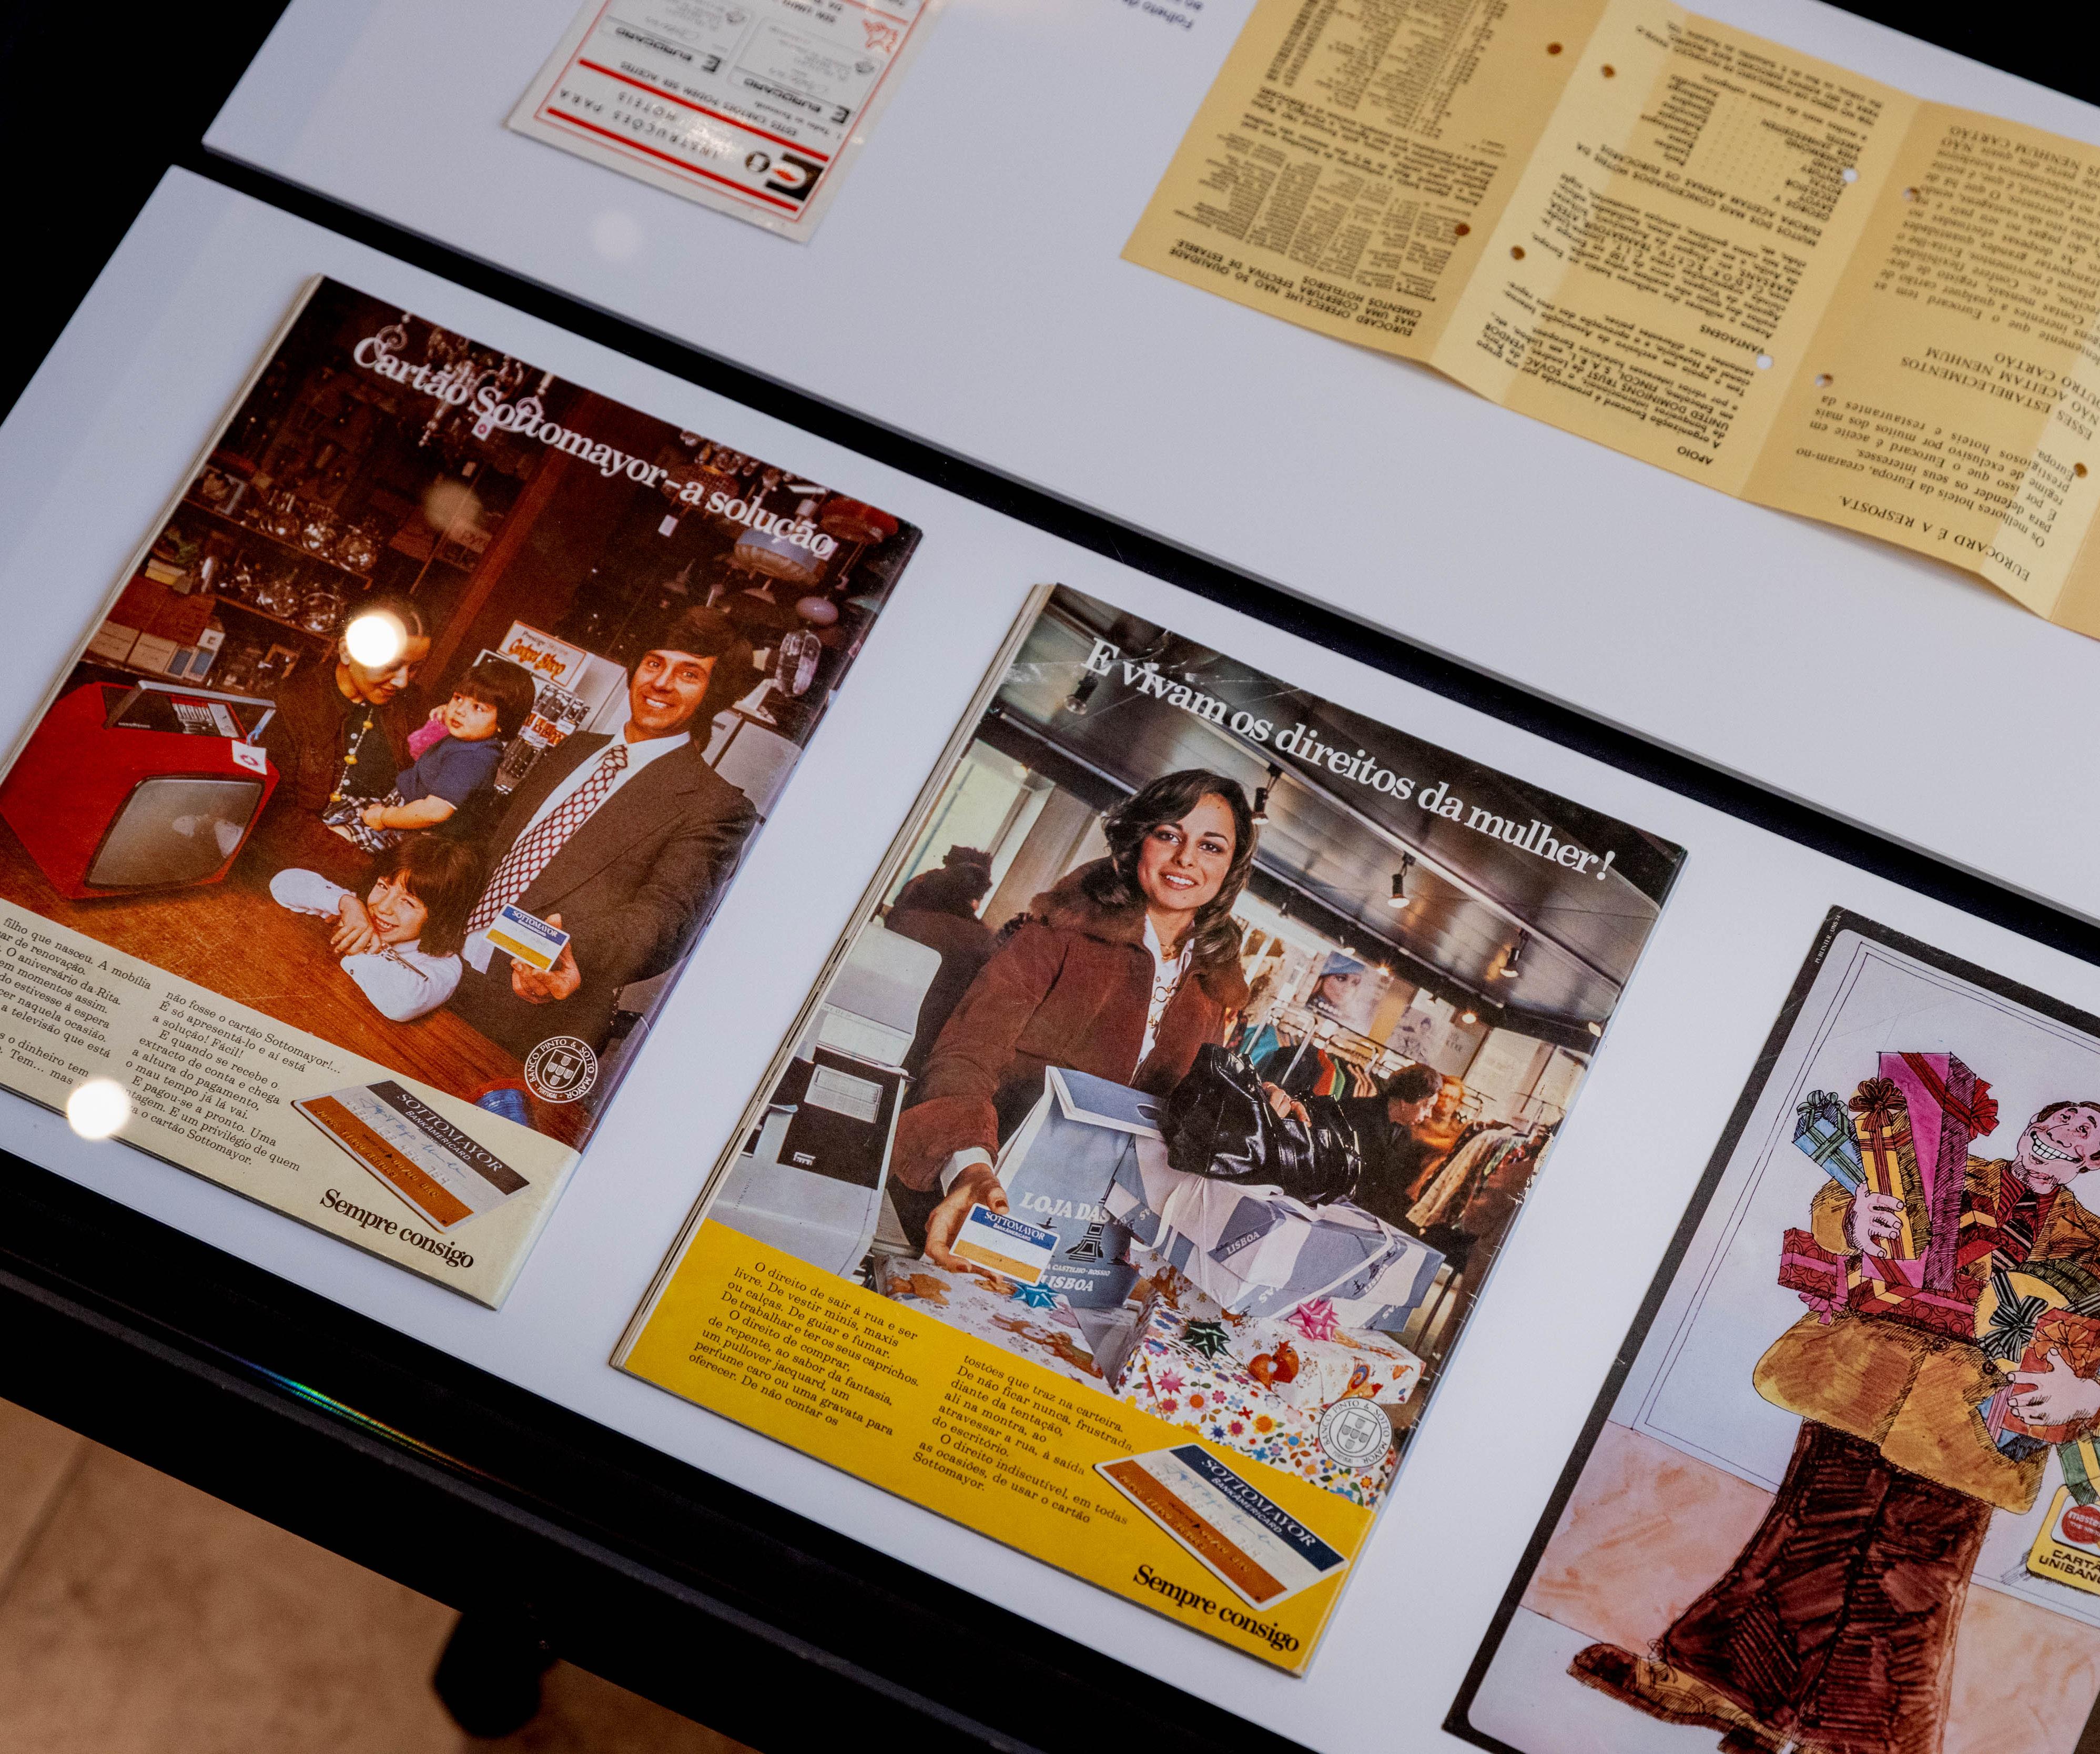 Fotografia do interior de vitrine com materiais publicitários (revistas) na exposição "Dinheiro de Plástico: a incrível história dos cartões bancários"